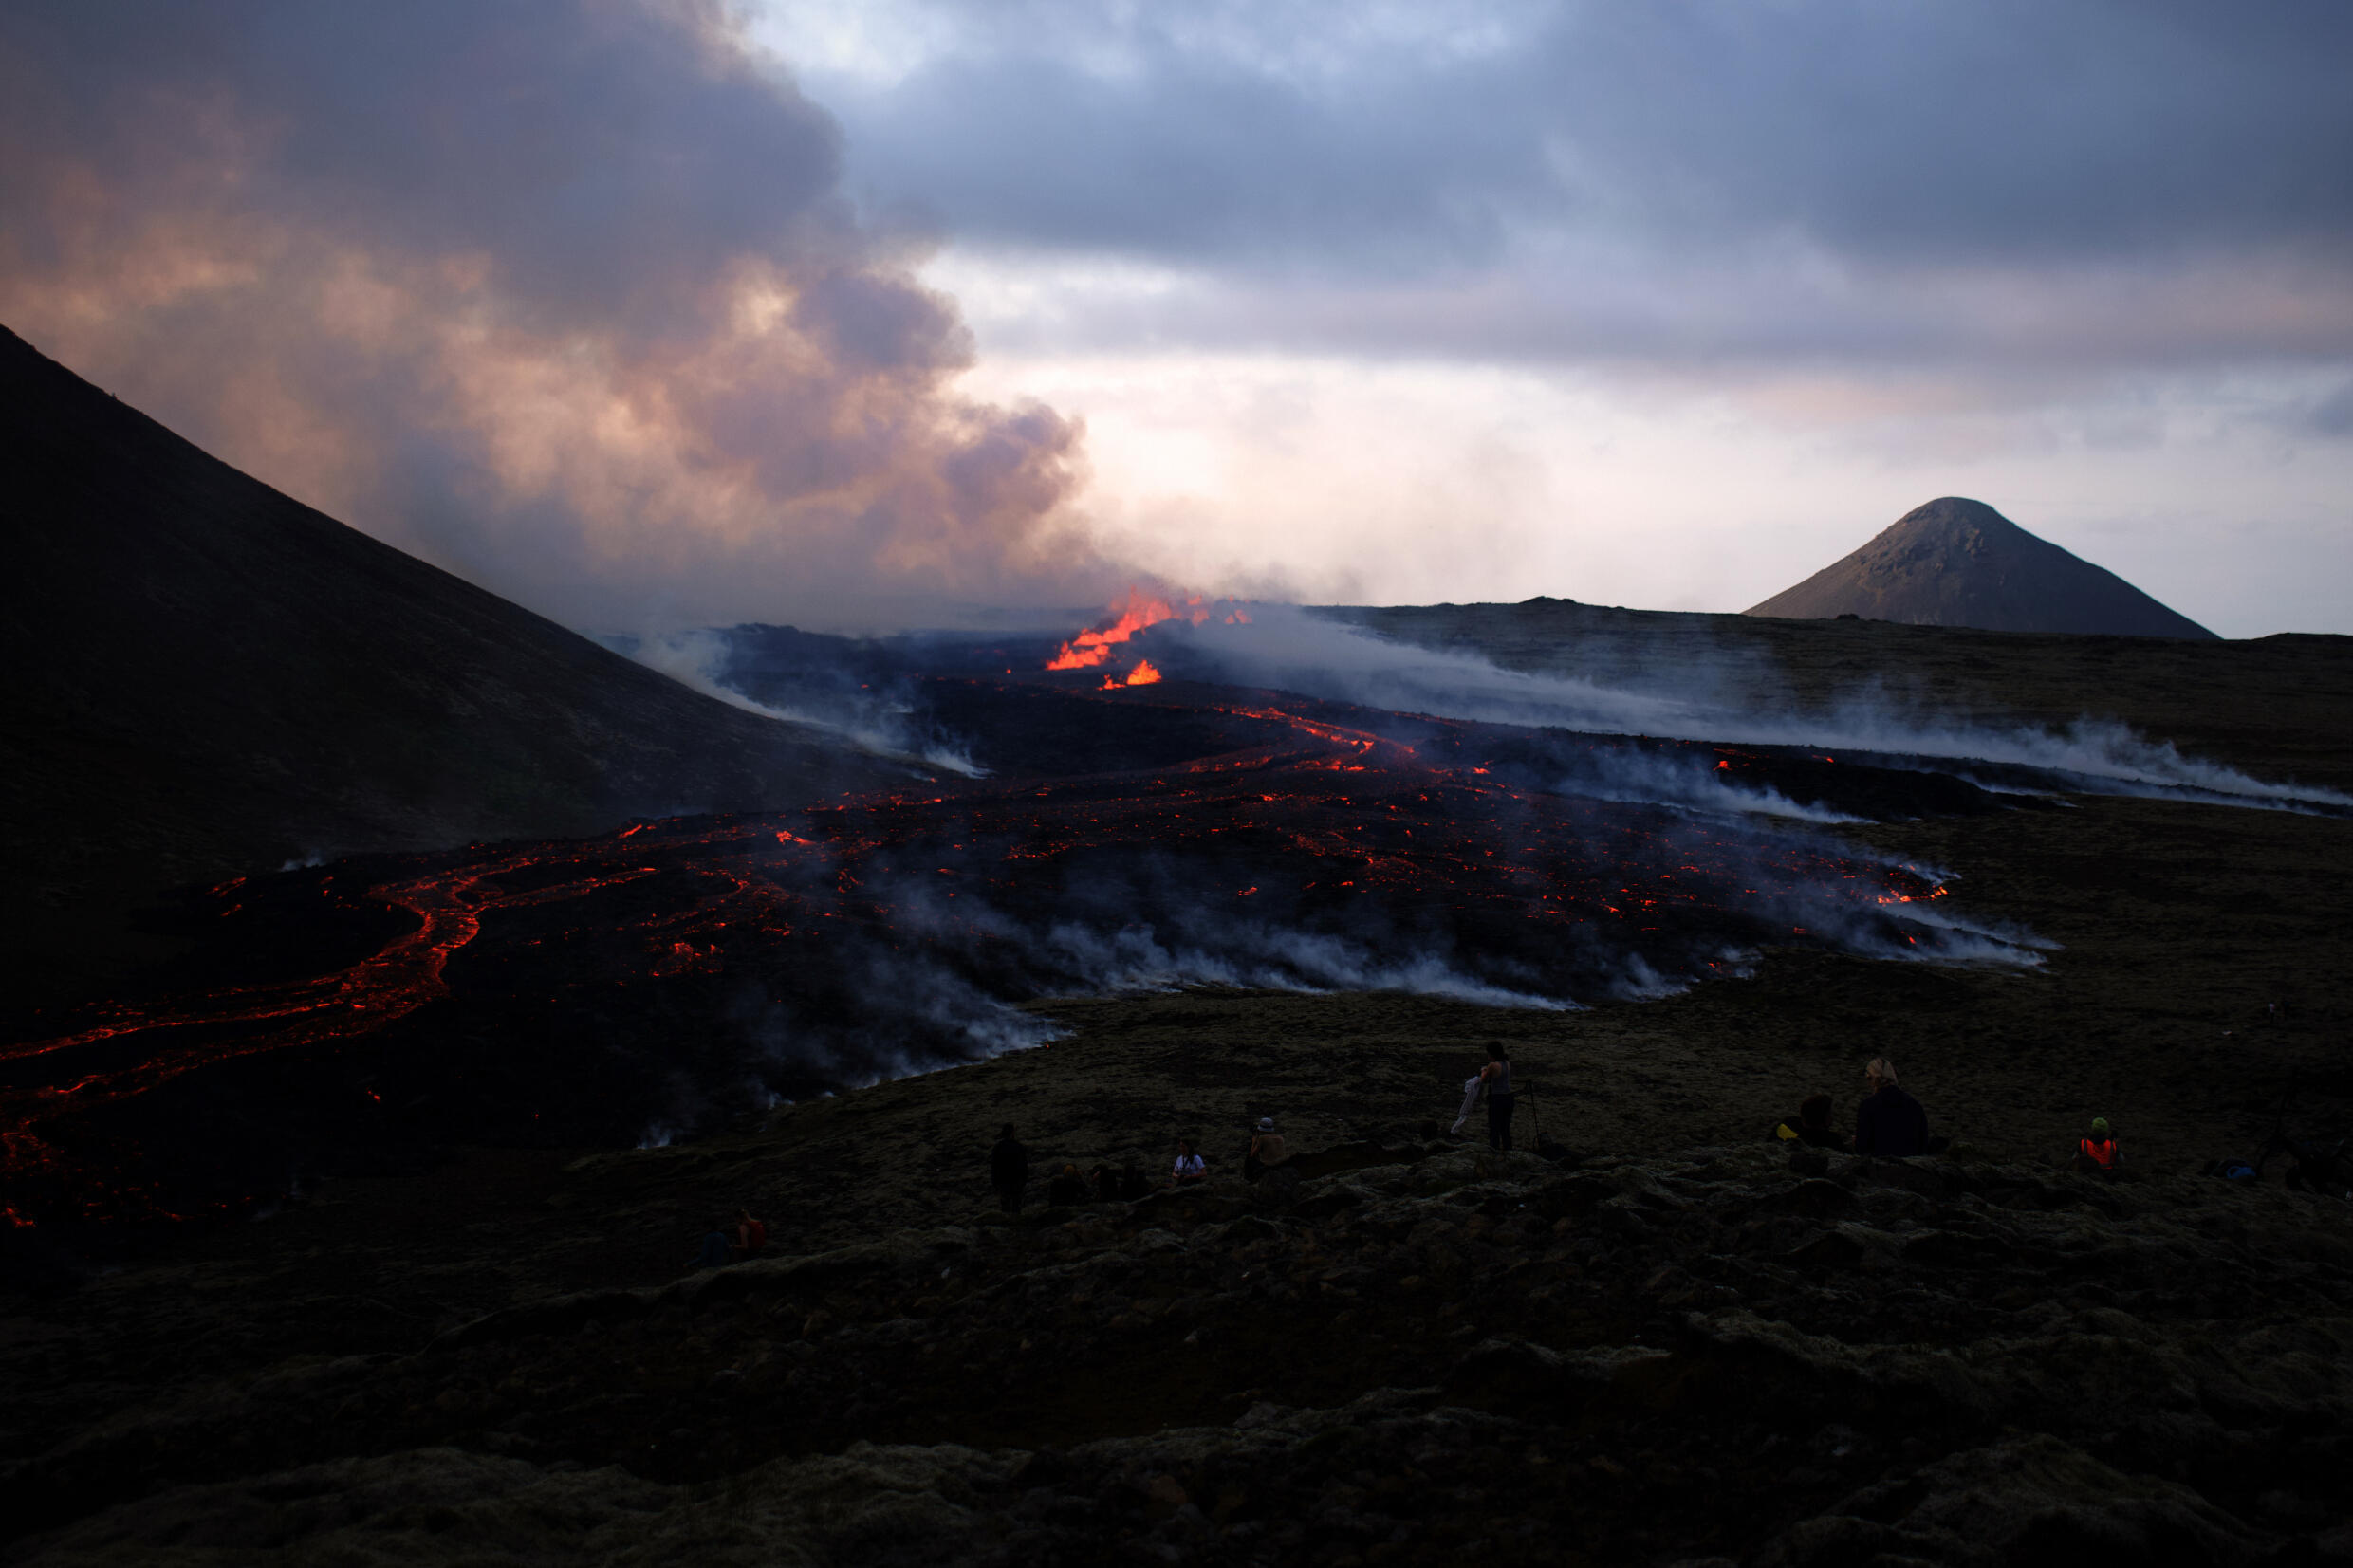 Menschen beobachten die Lava eines Vulkanausbruchs in der Nähe des Litli Hrutur-Gipfels, Island.